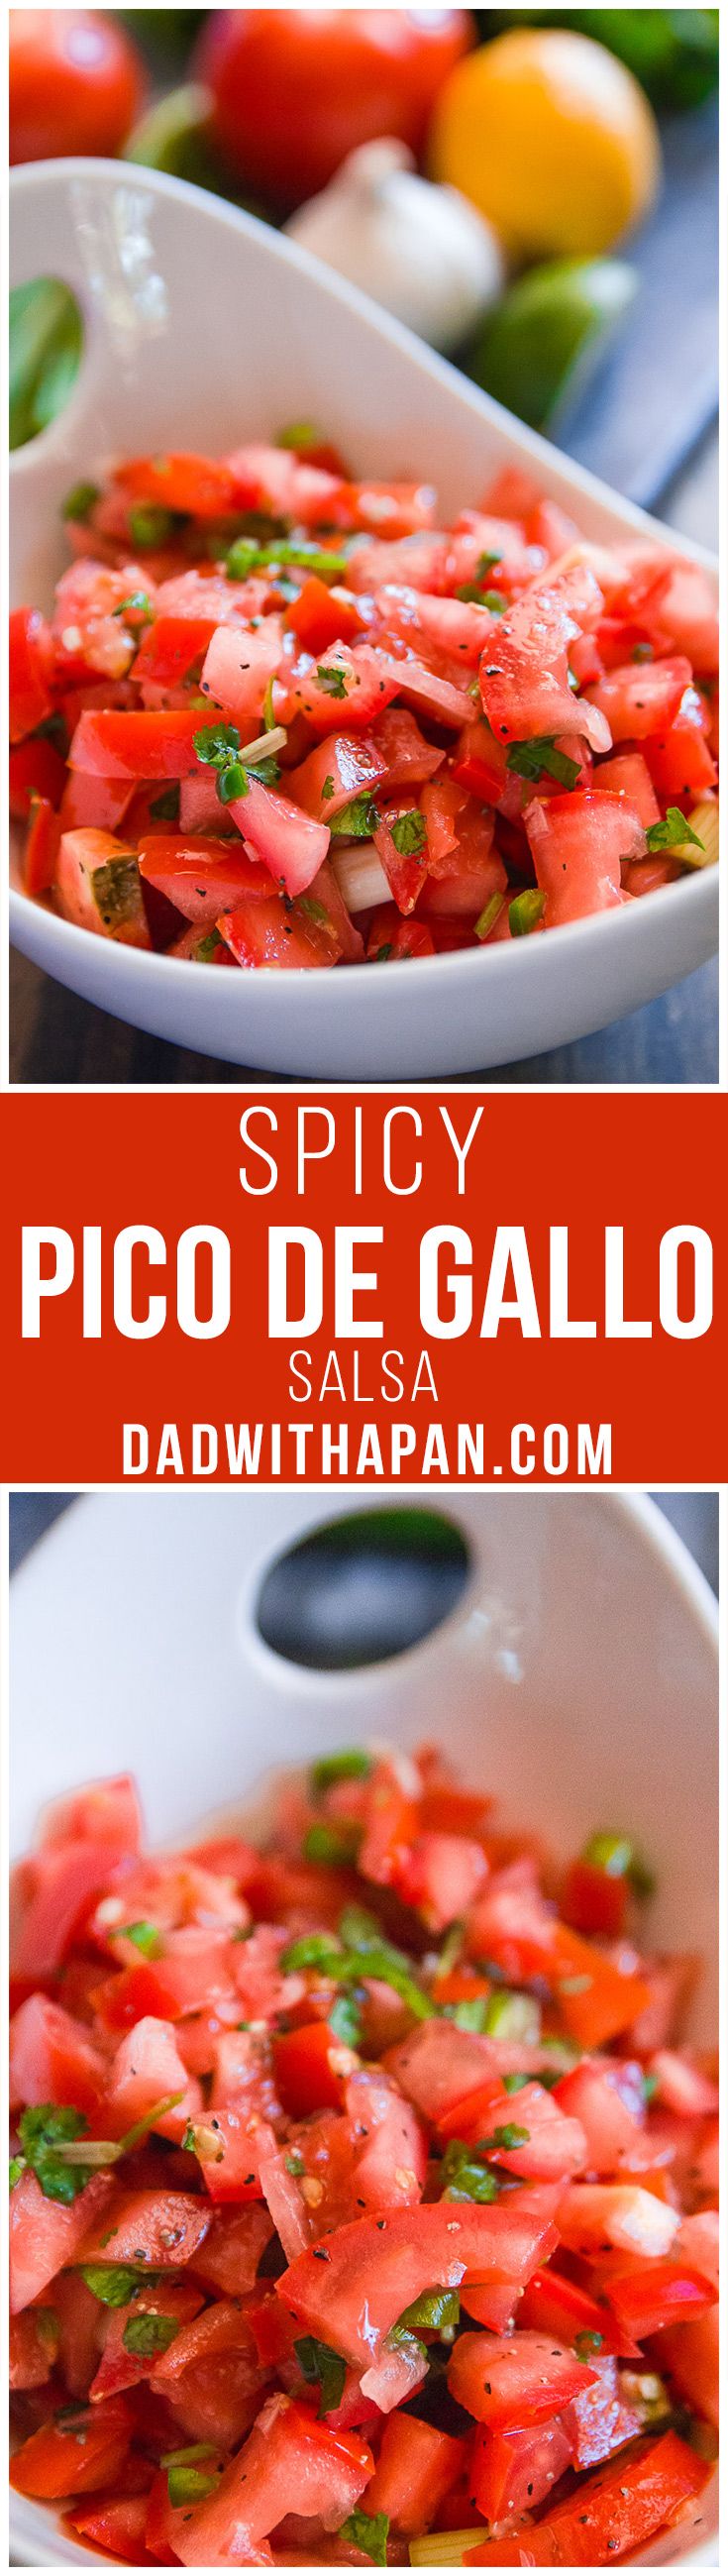 Spicy Pico De Gallo #Salsa #Tomatoes #Jalapeno